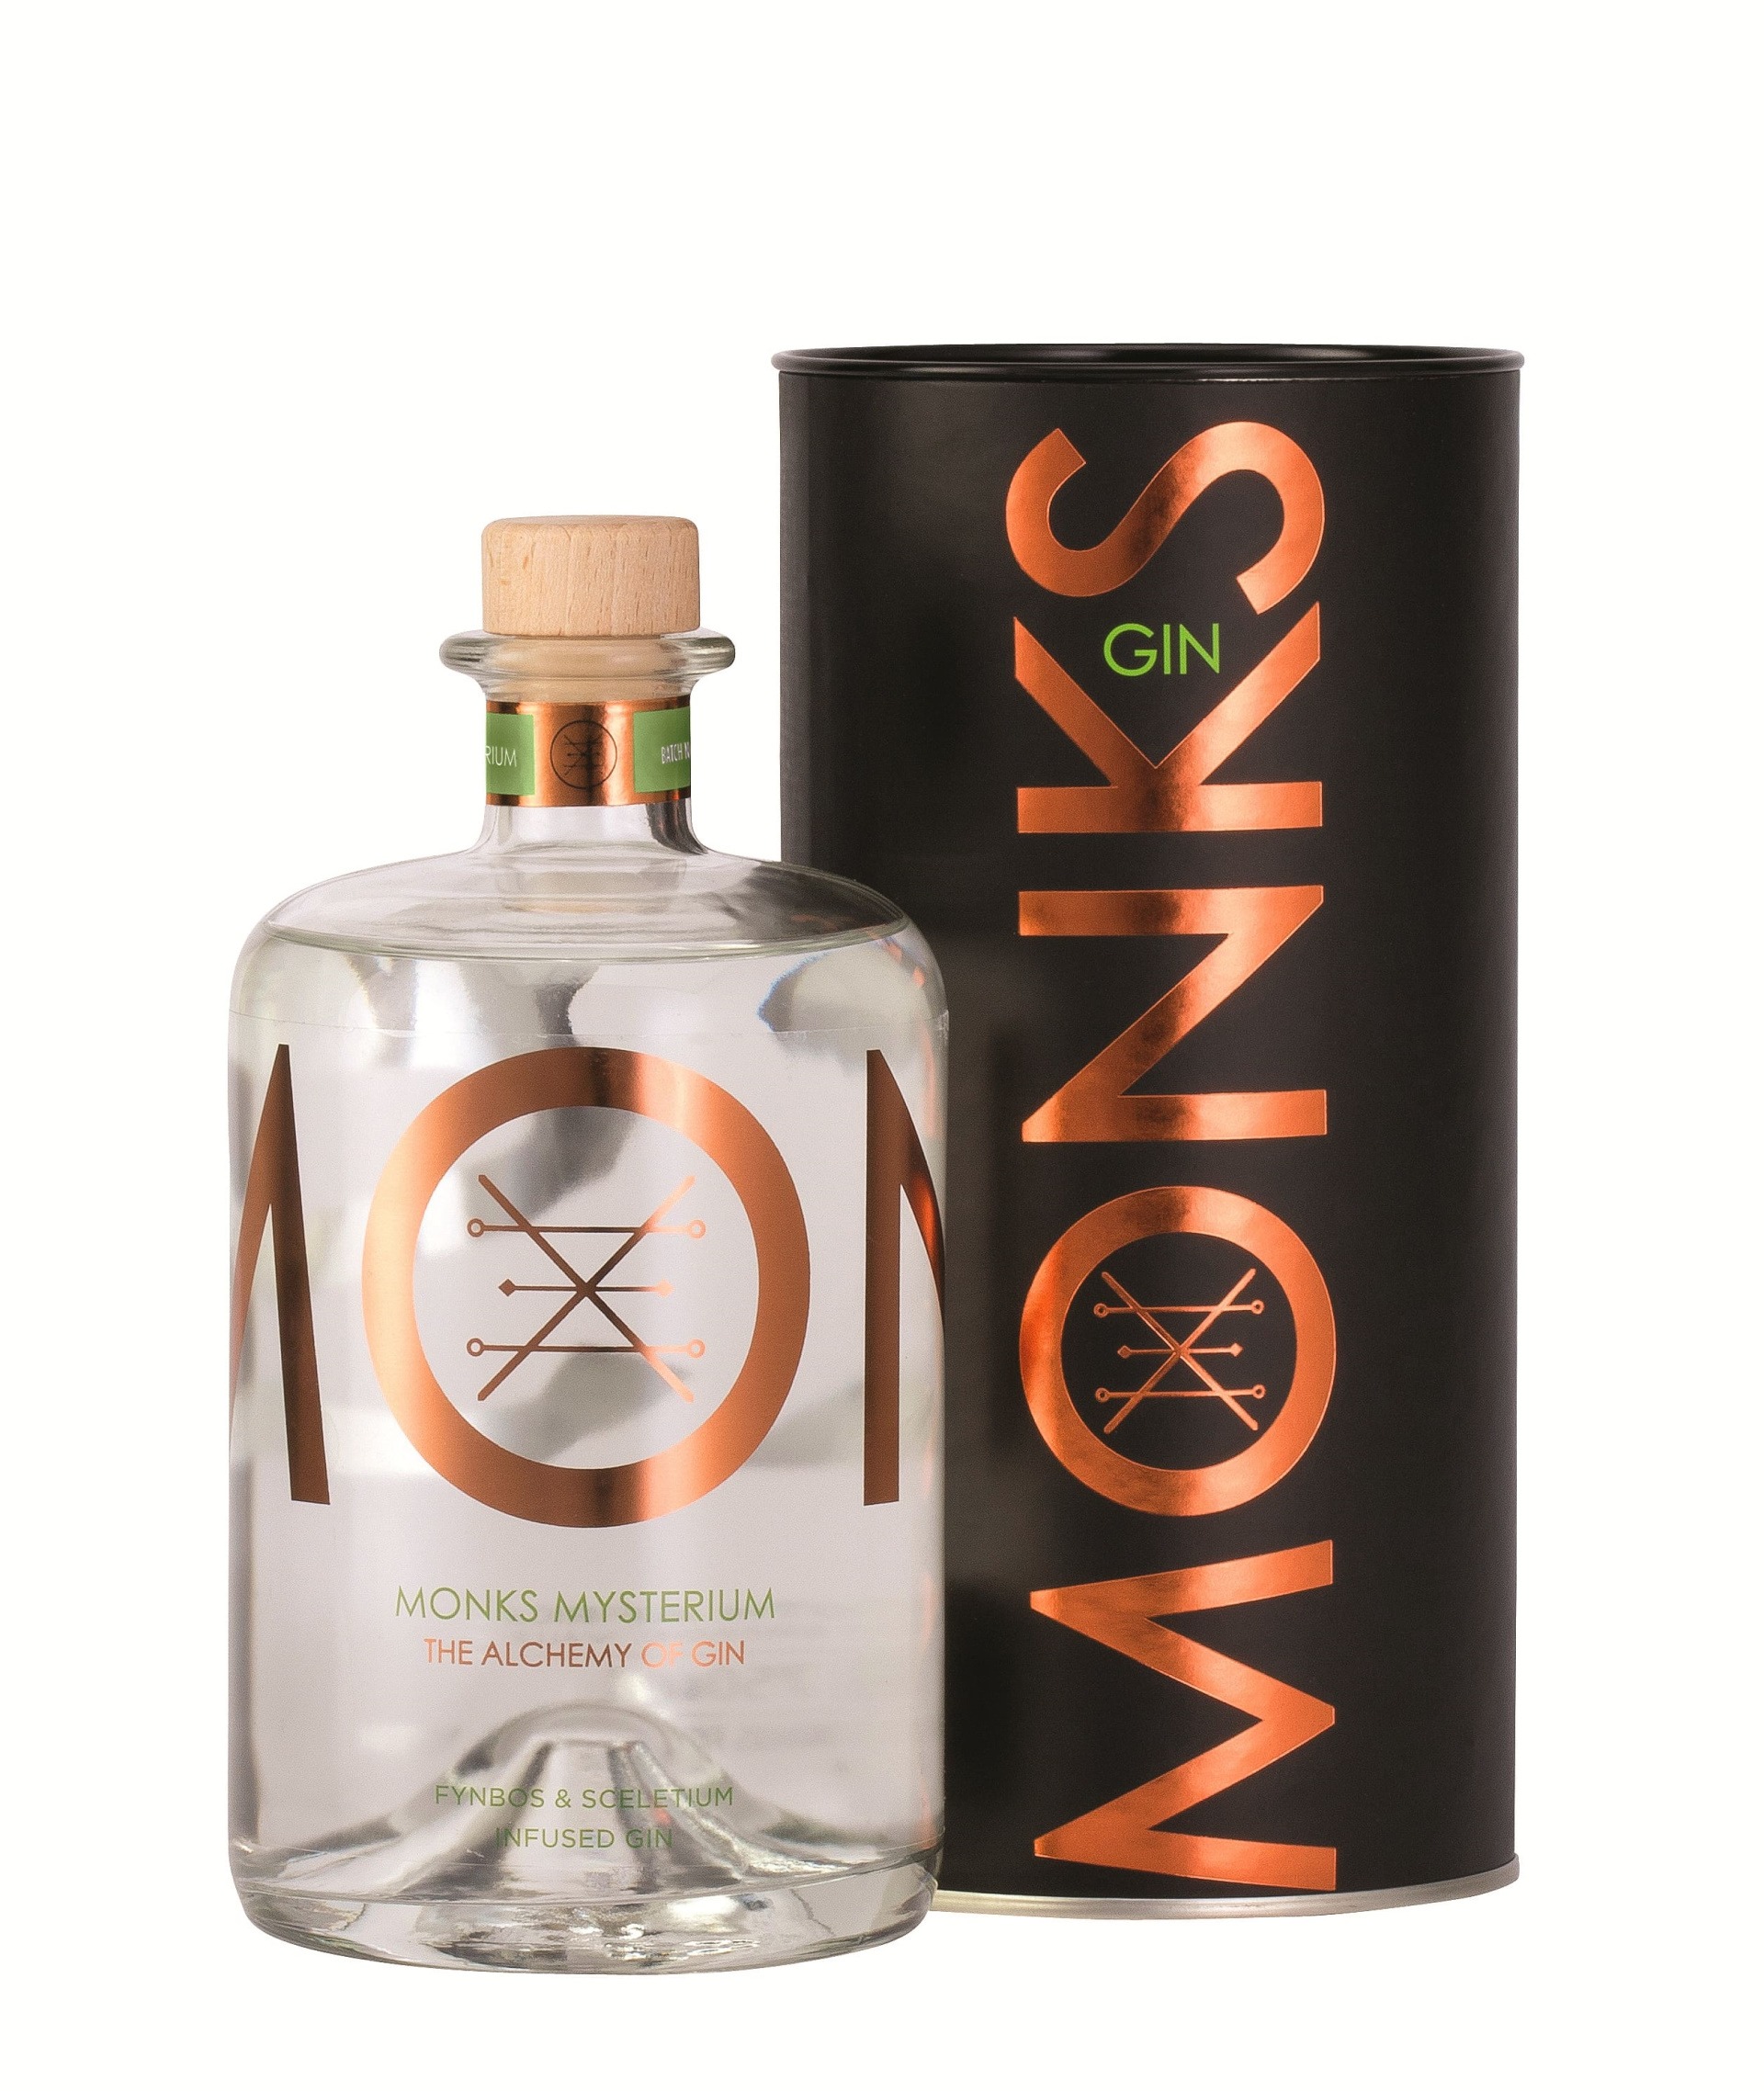 Bouteille de Gin Monks parfum Mysterium avec son packaging